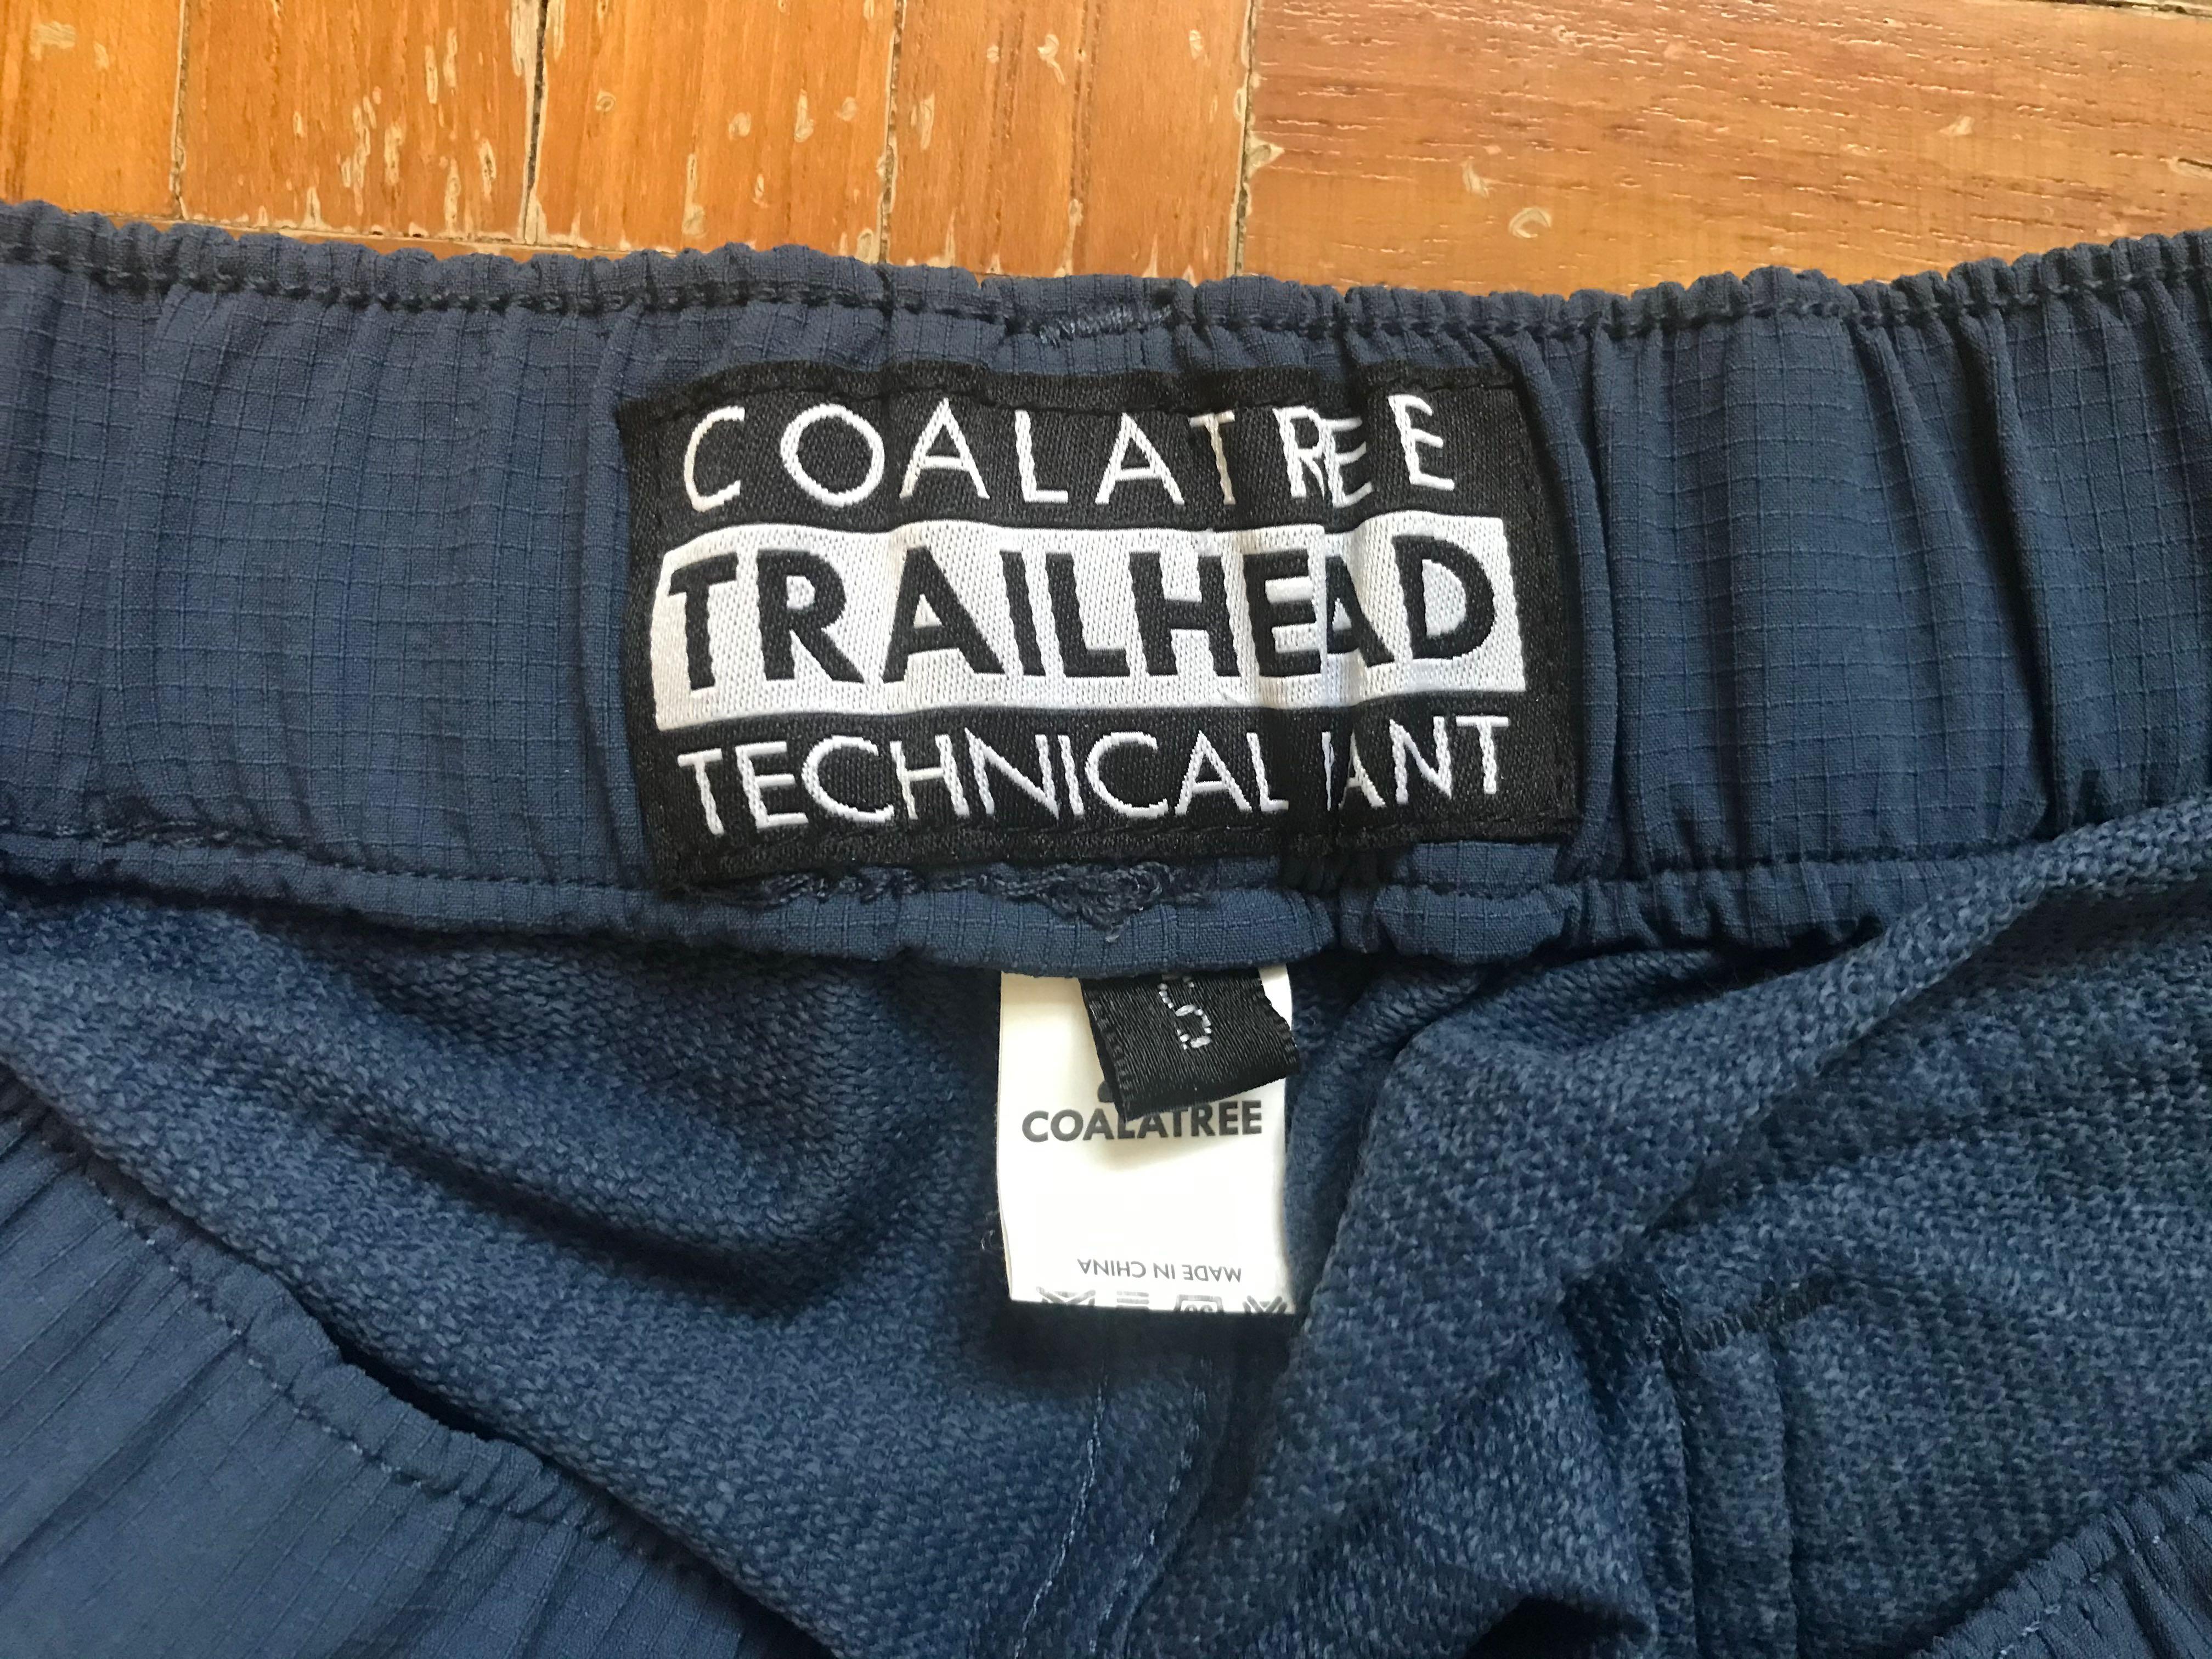 Trailhead Pants – Coalatree Europe